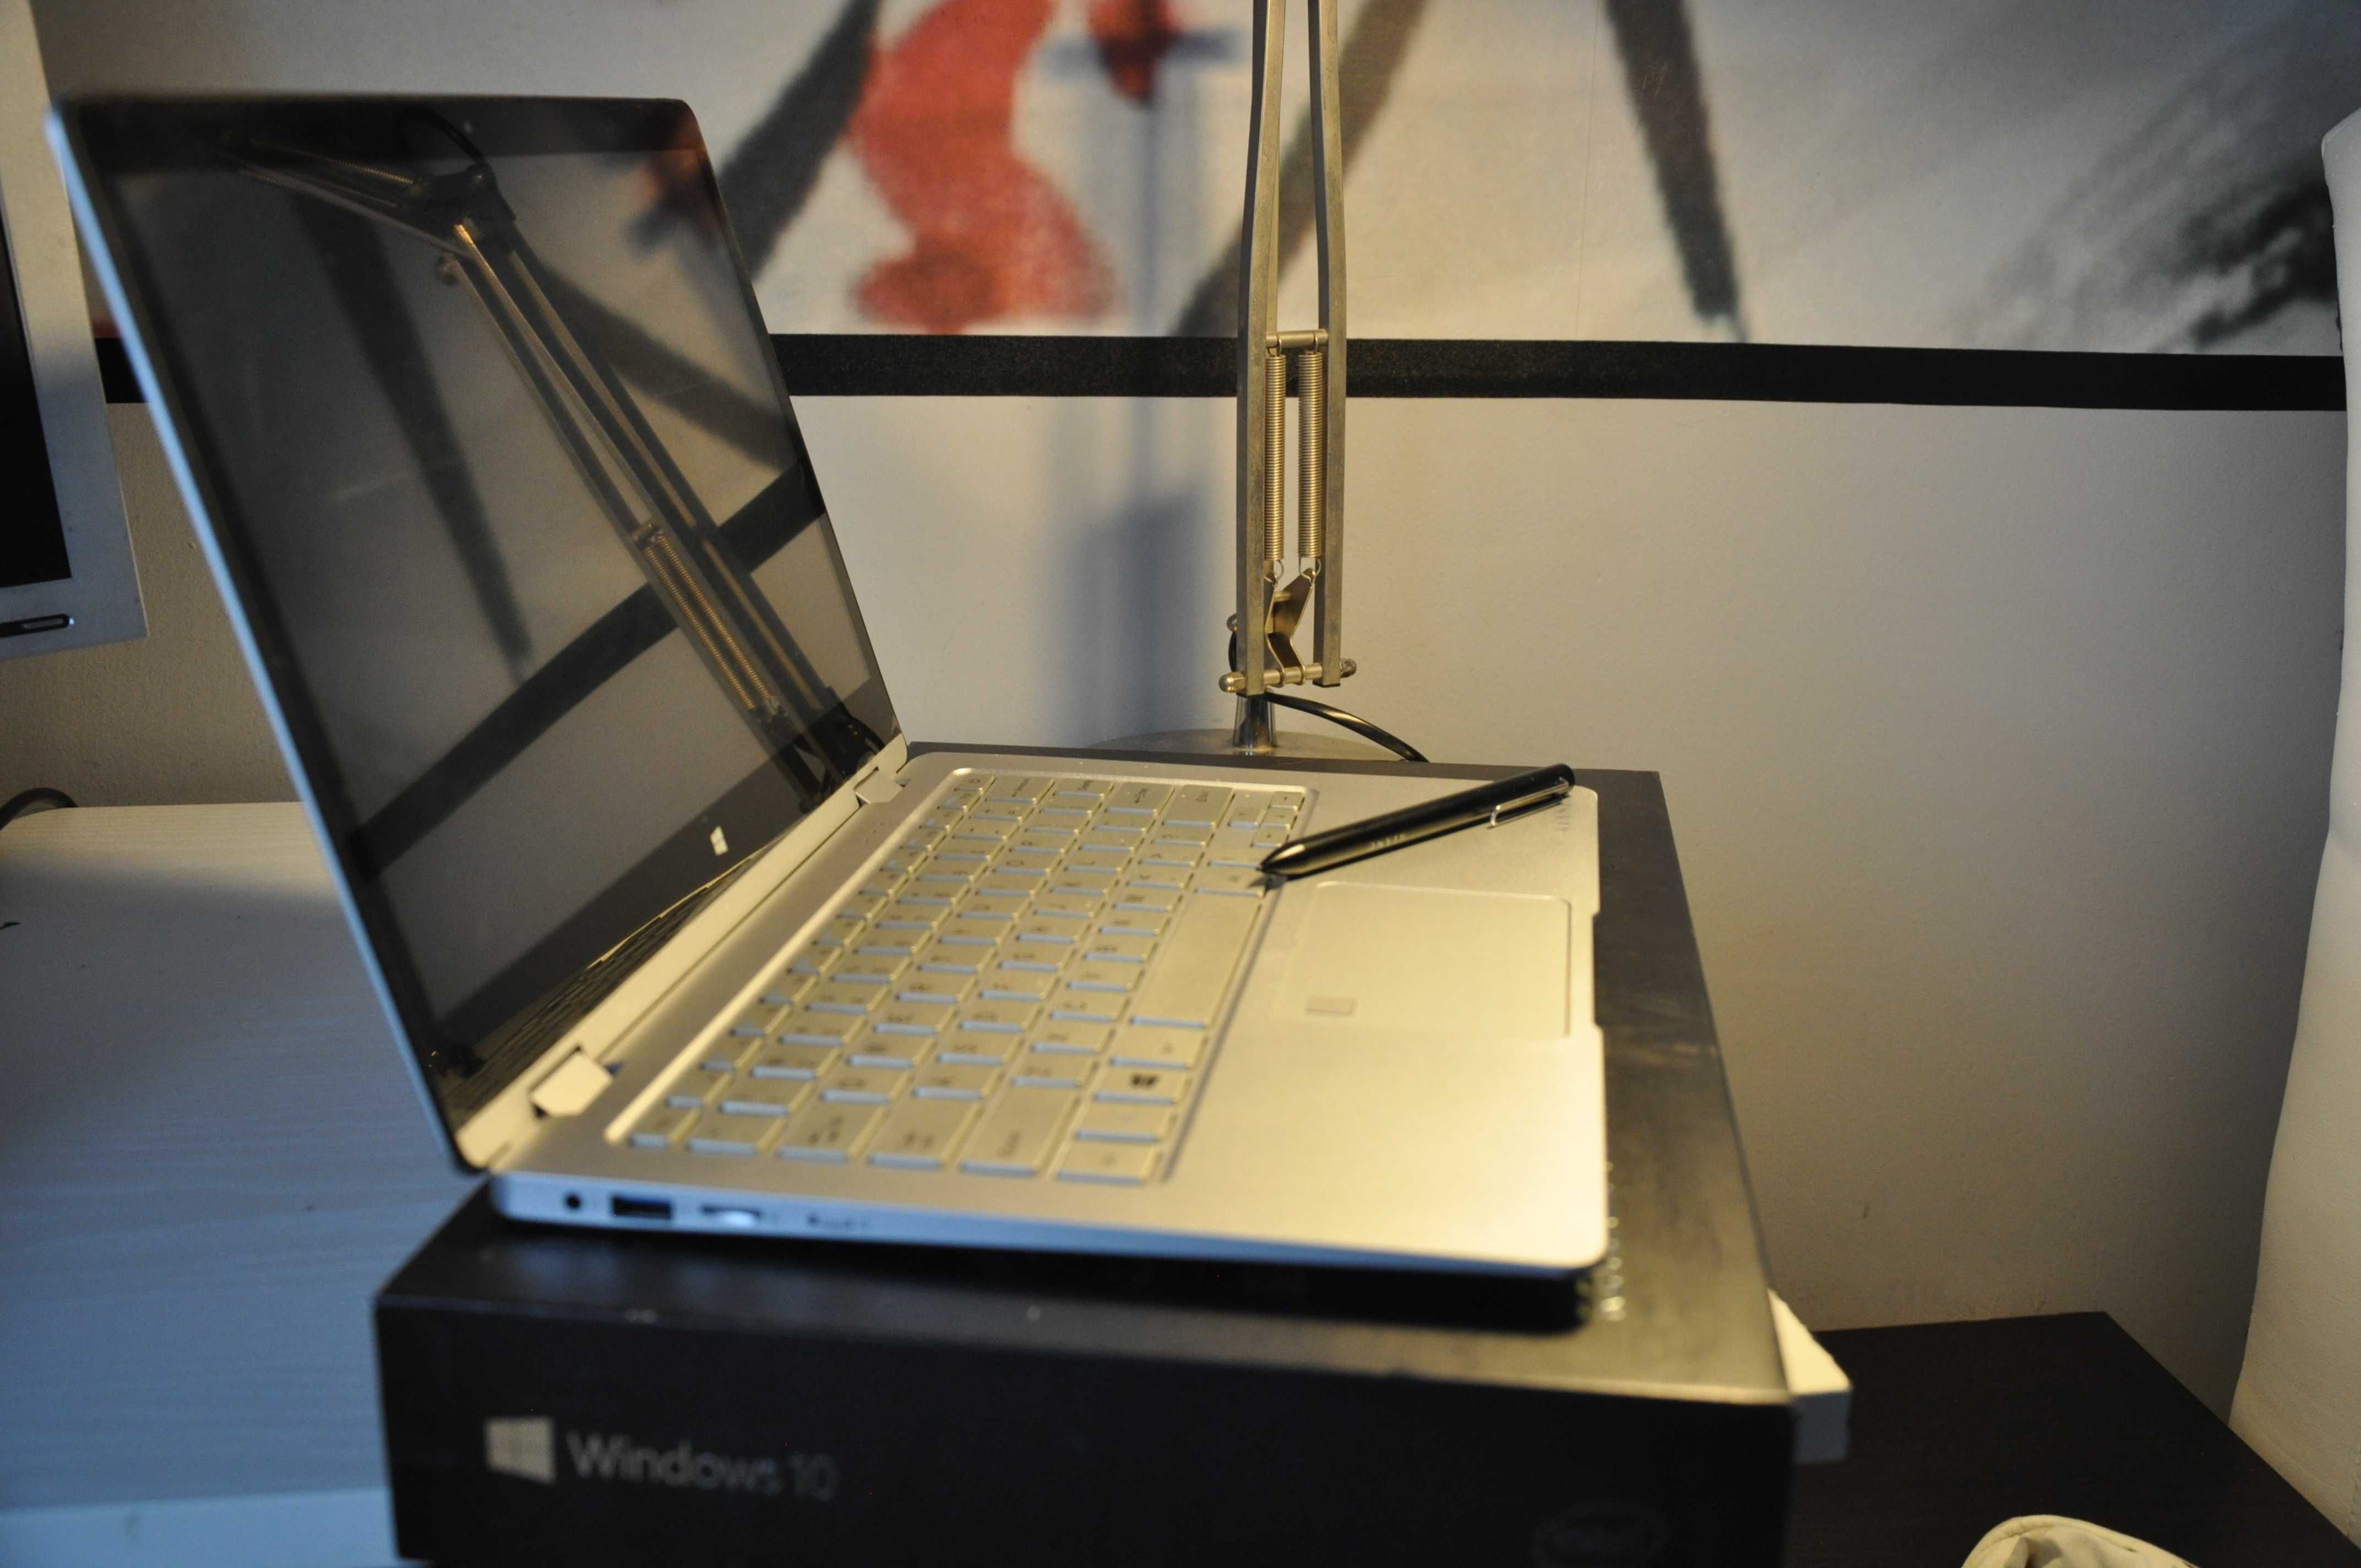 Laptop Kiano Elegance 360, Super Stan, 13,3", SSD, Win 10, dotykowy